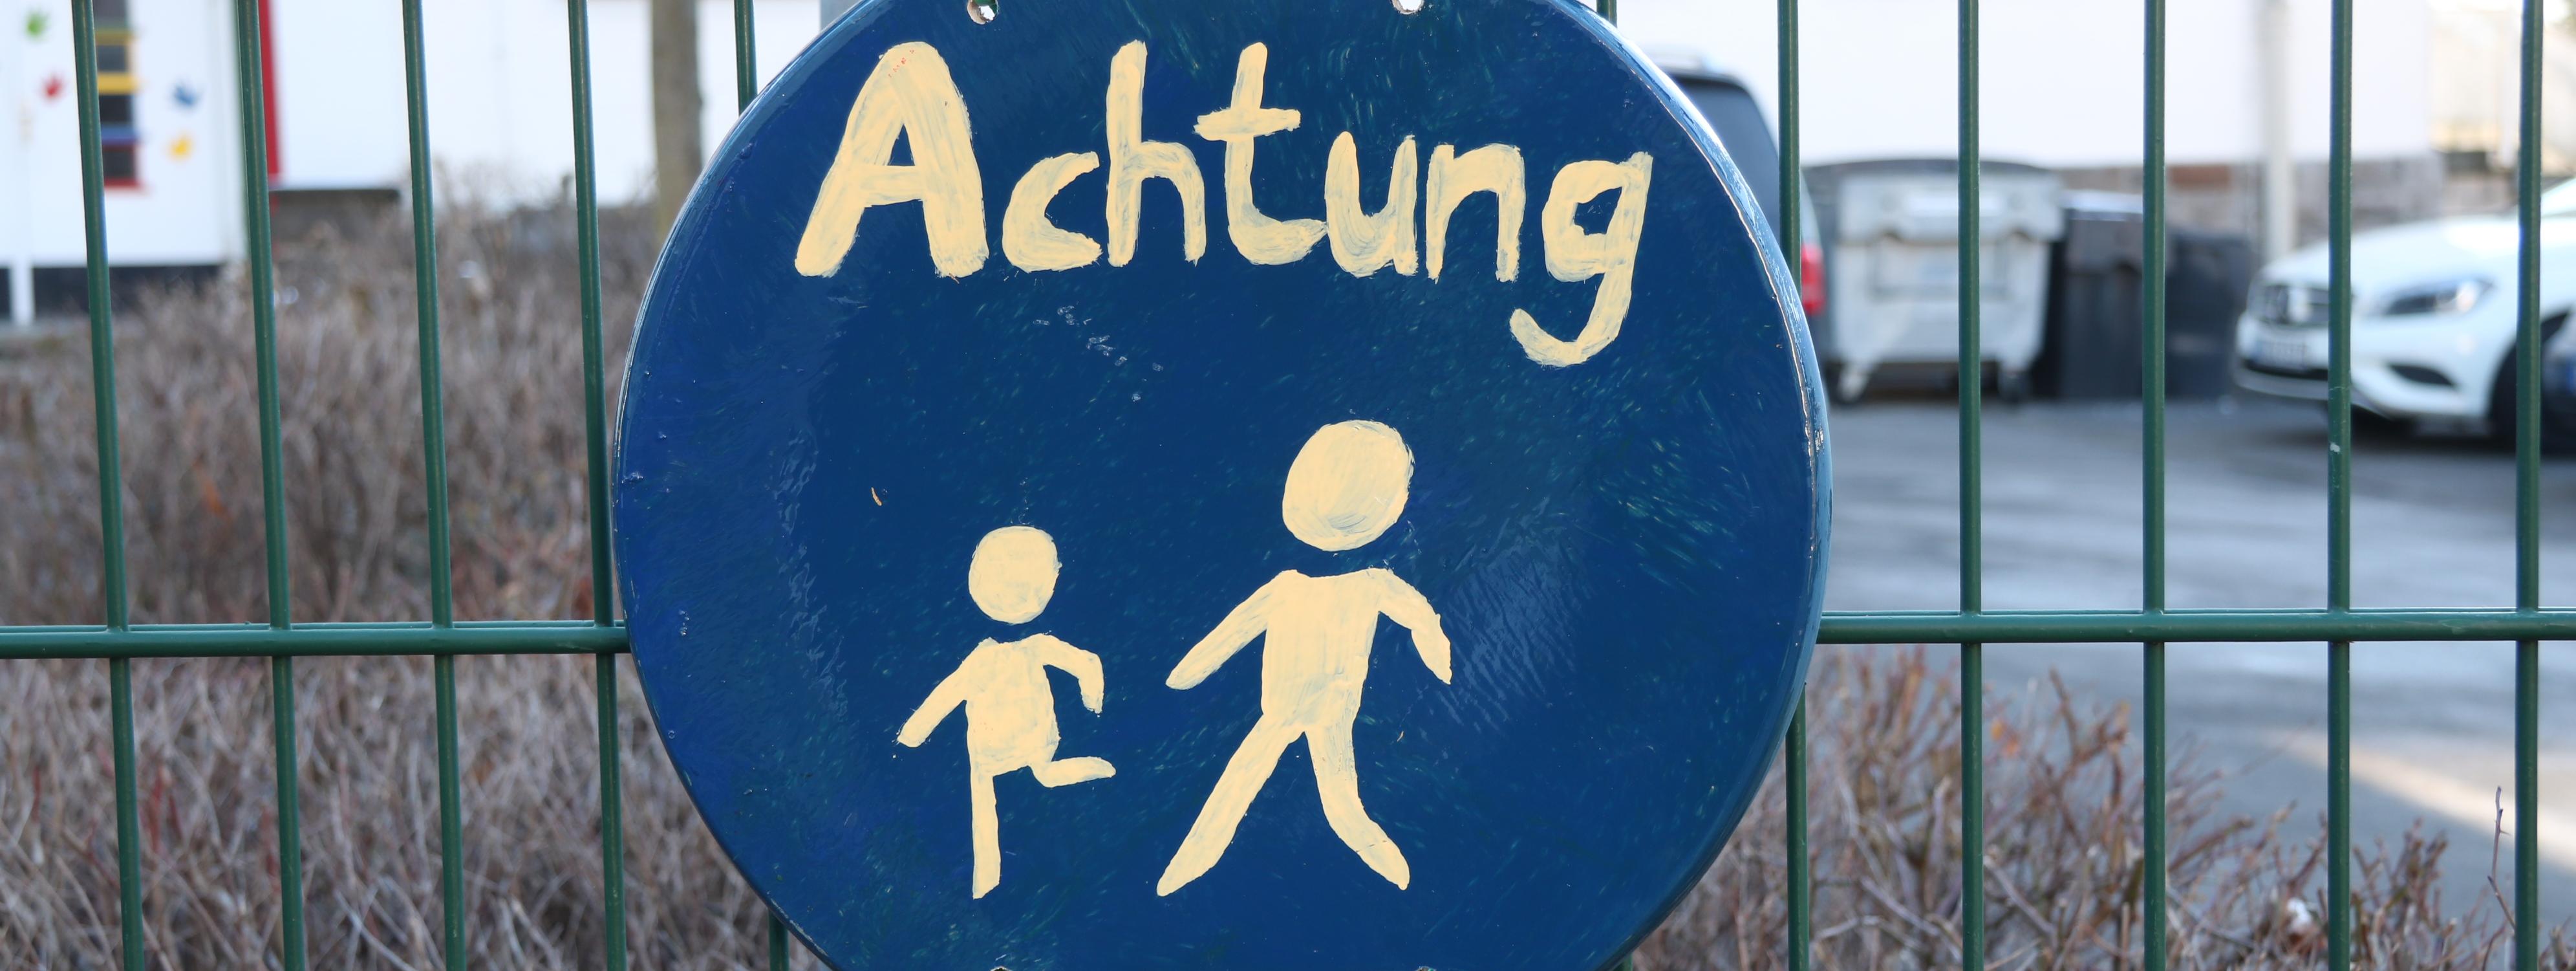 An einem grünen Metallzaun vor der Josefschule hängt ein selbstgemaltes Schild. Es ist rund, darauf sind zwei laufende Strichmännchen in weißer Farbe, darüber steht das Wort "Achtung".